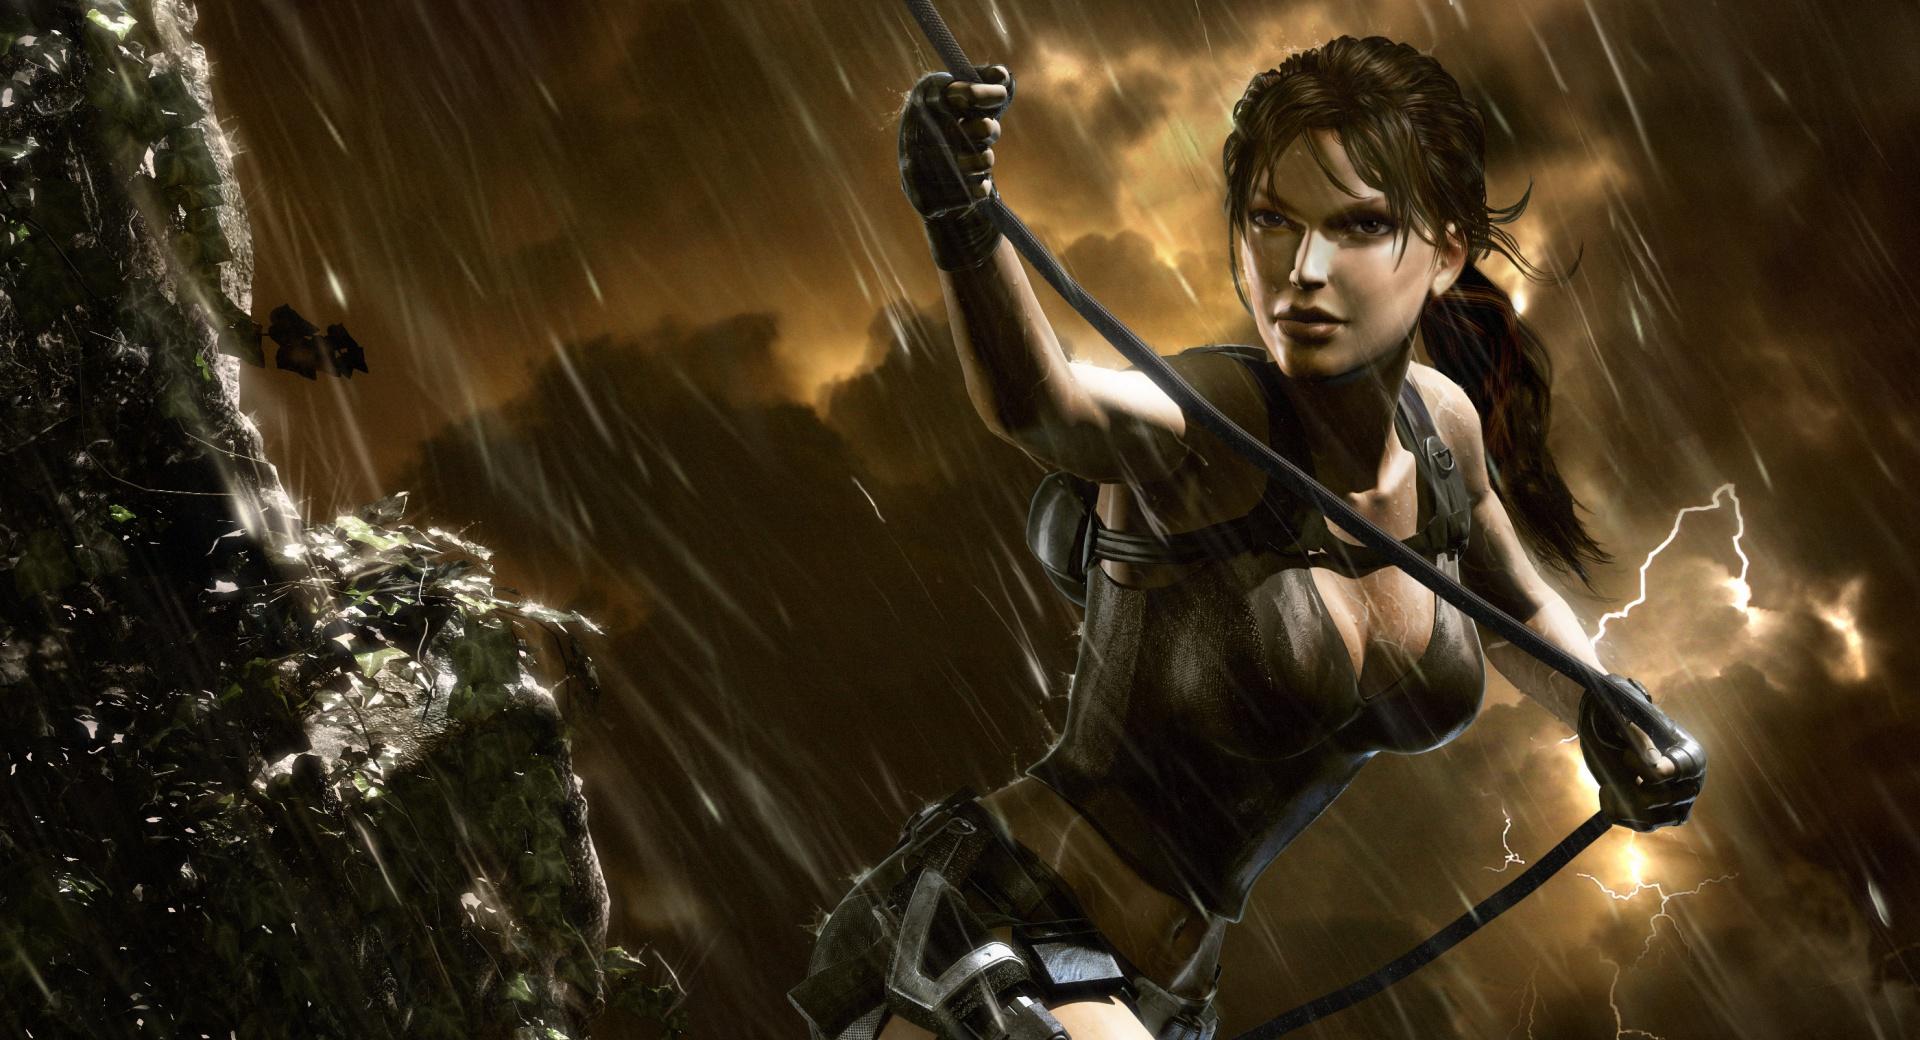 Tomb Raider Underworld Storm at 1024 x 1024 iPad size wallpapers HD quality